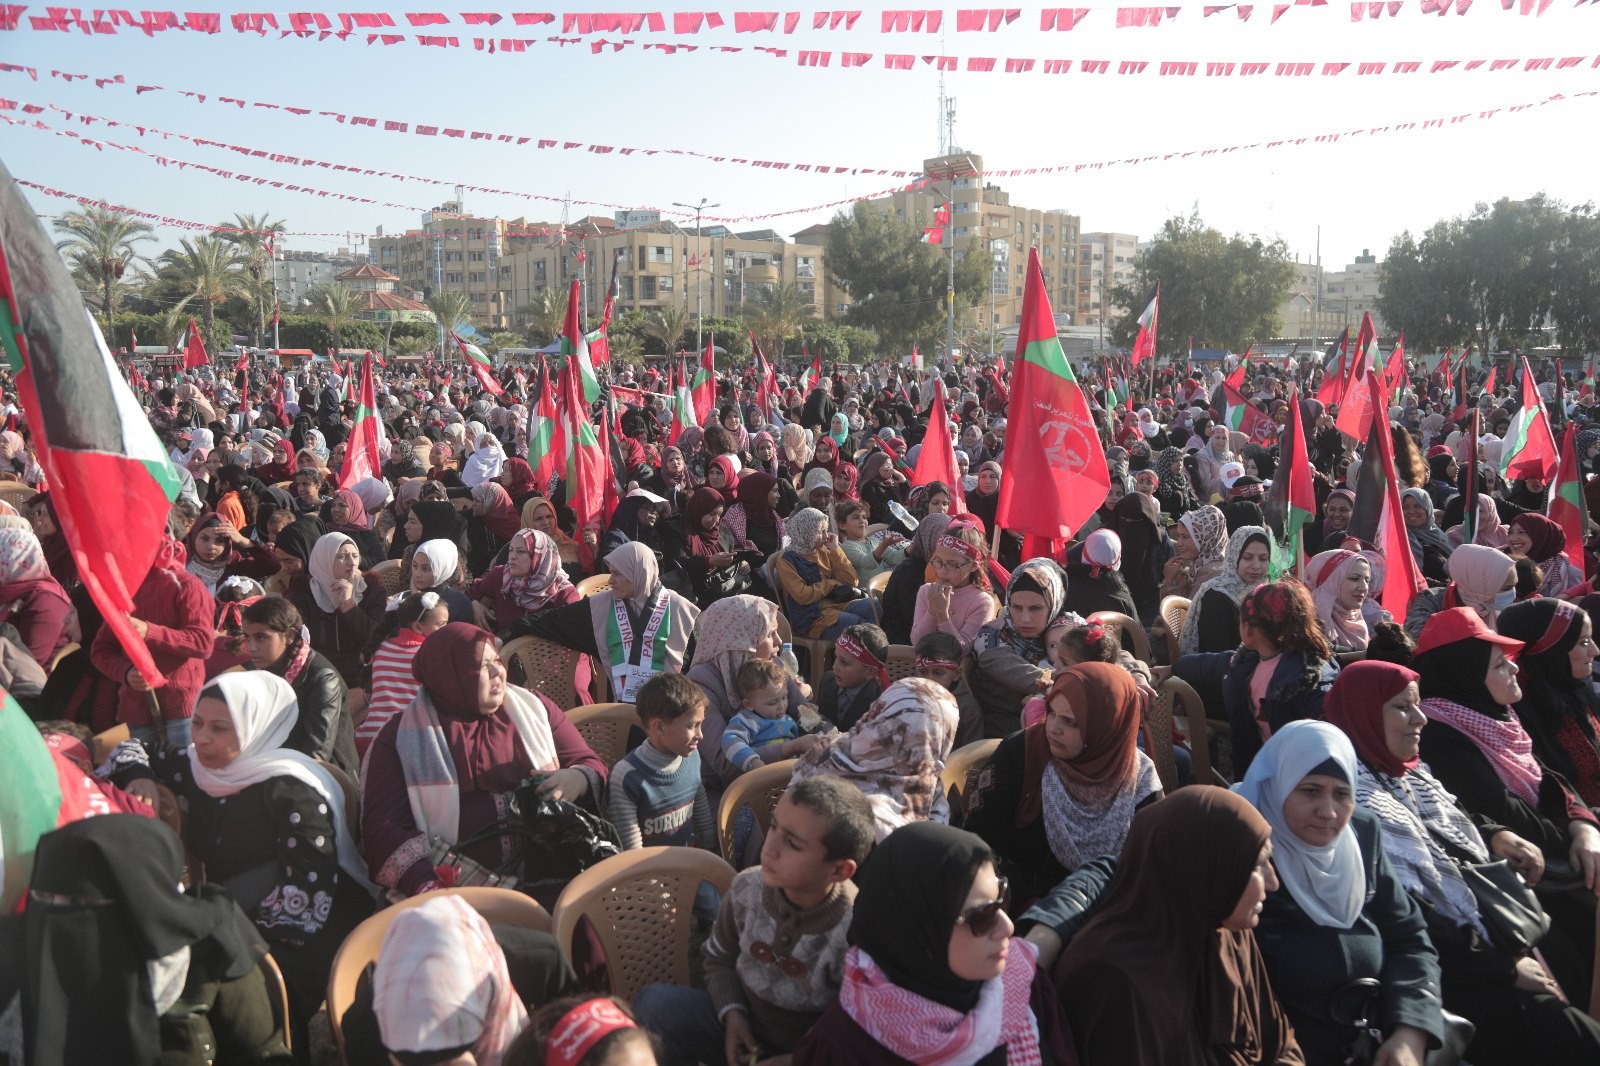 عشرات الآلاف يُشاركون في المهرجان الوطني (انطلاقتنا مقاومة) في ساحة الكتيبة بمدينة غزة لإحياء ذكرى انطلاقة الجبهة الشعبيّة لتحرير فلسطين الـ55. 7.jpg